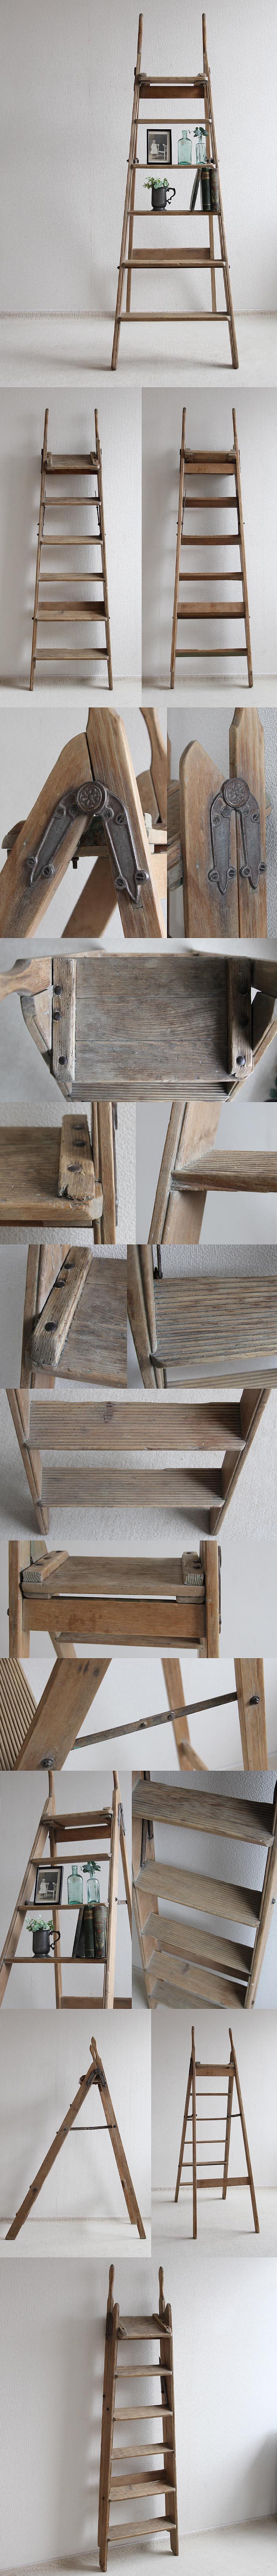 イギリス アンティーク ステップラダー 脚立 木製 折りたたみ式 家具「店舗ディスプレイ」P-136